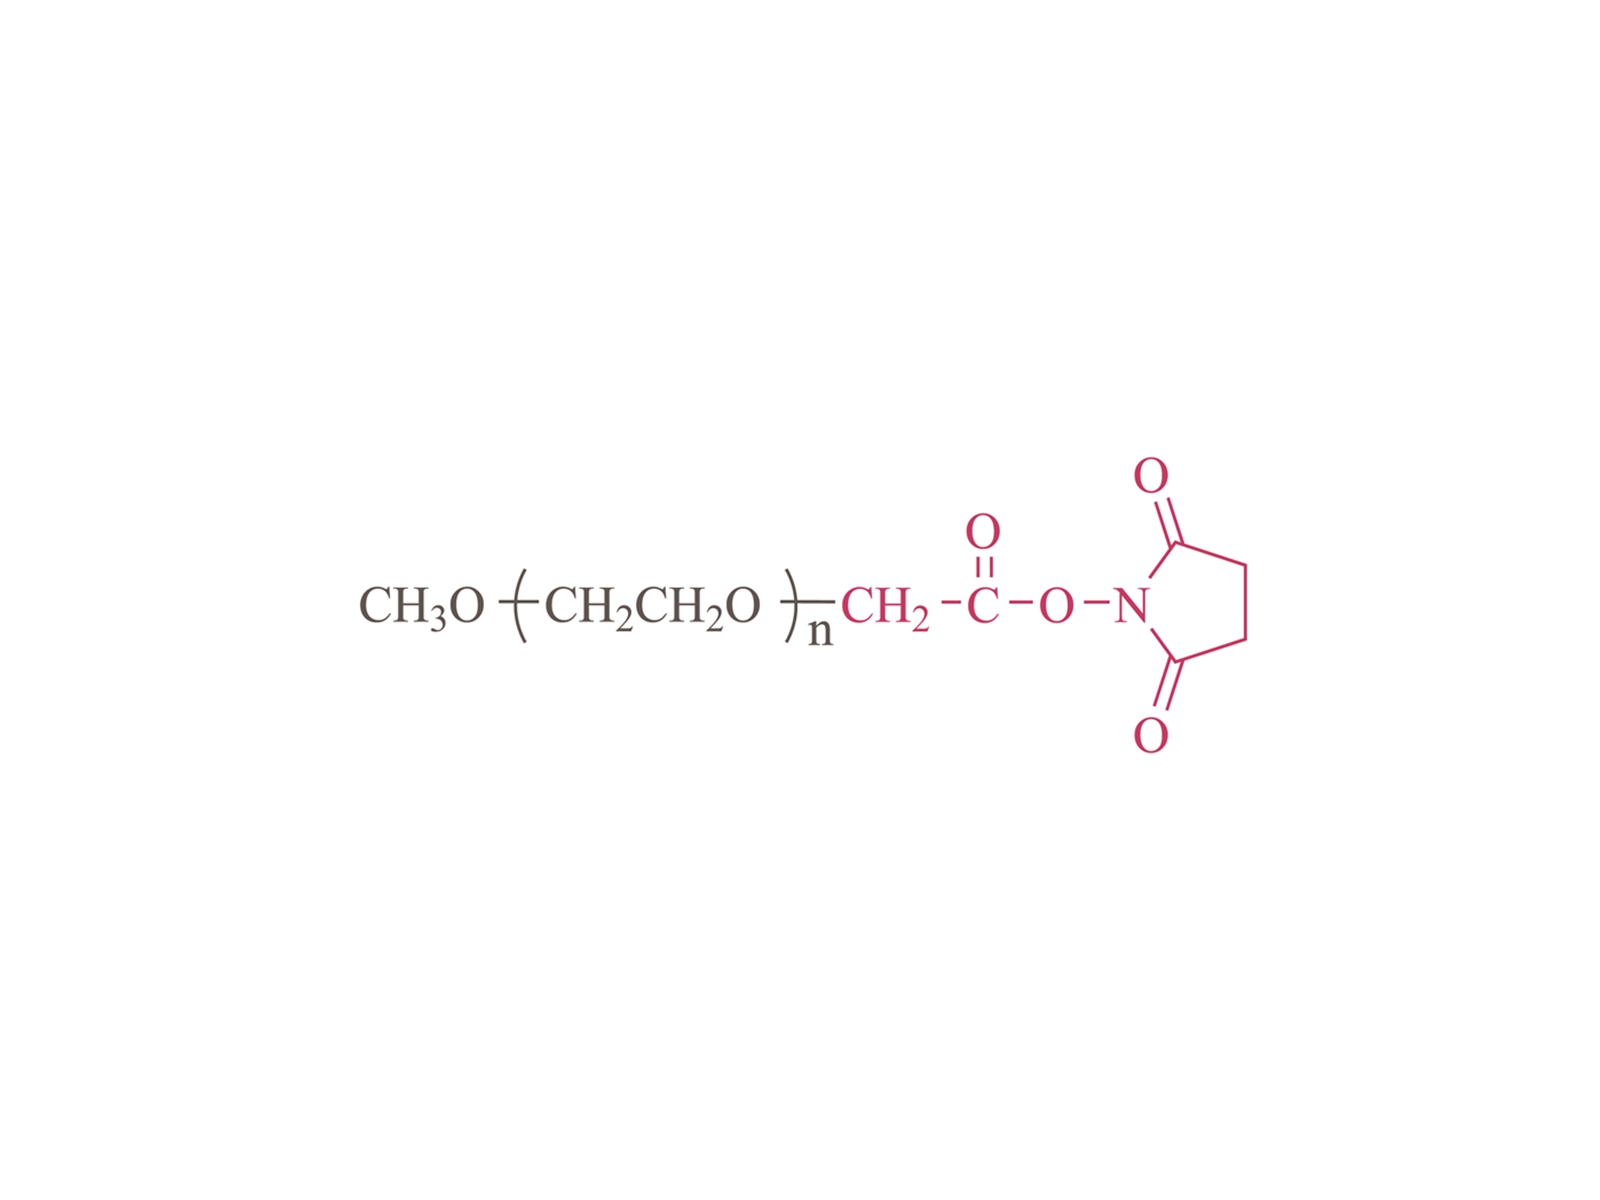 Methoxypoly(ethylene glycol) succinimidyl carboxymethyl ester [mPEG-SCM]